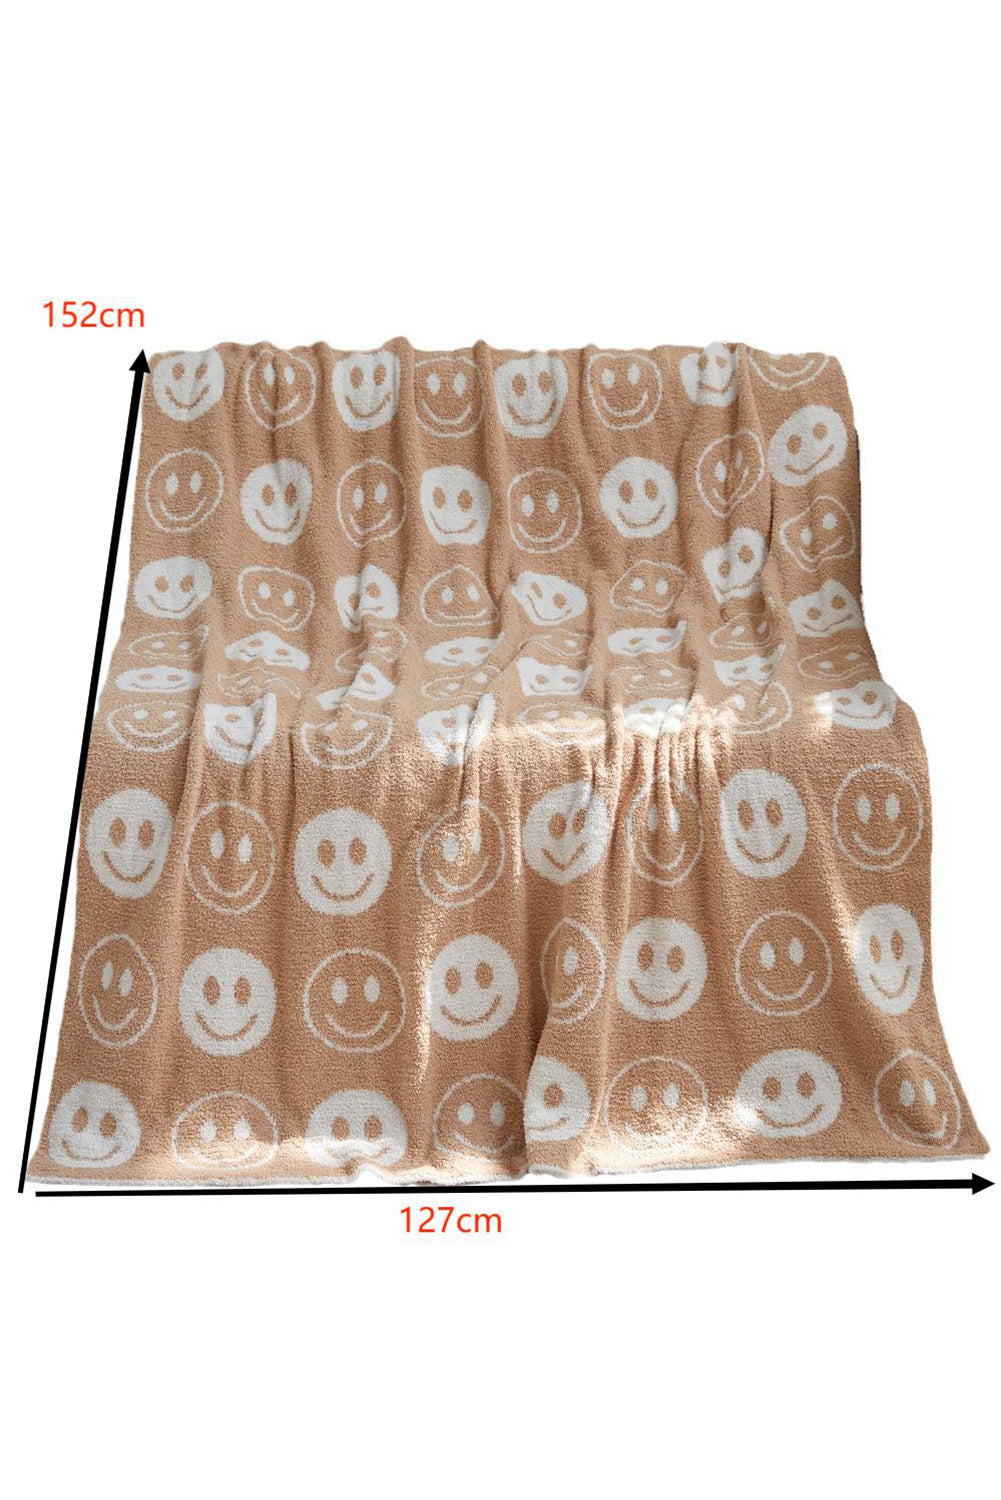 Beige 127x152cm Smile Flannel Fall Winter Blanket